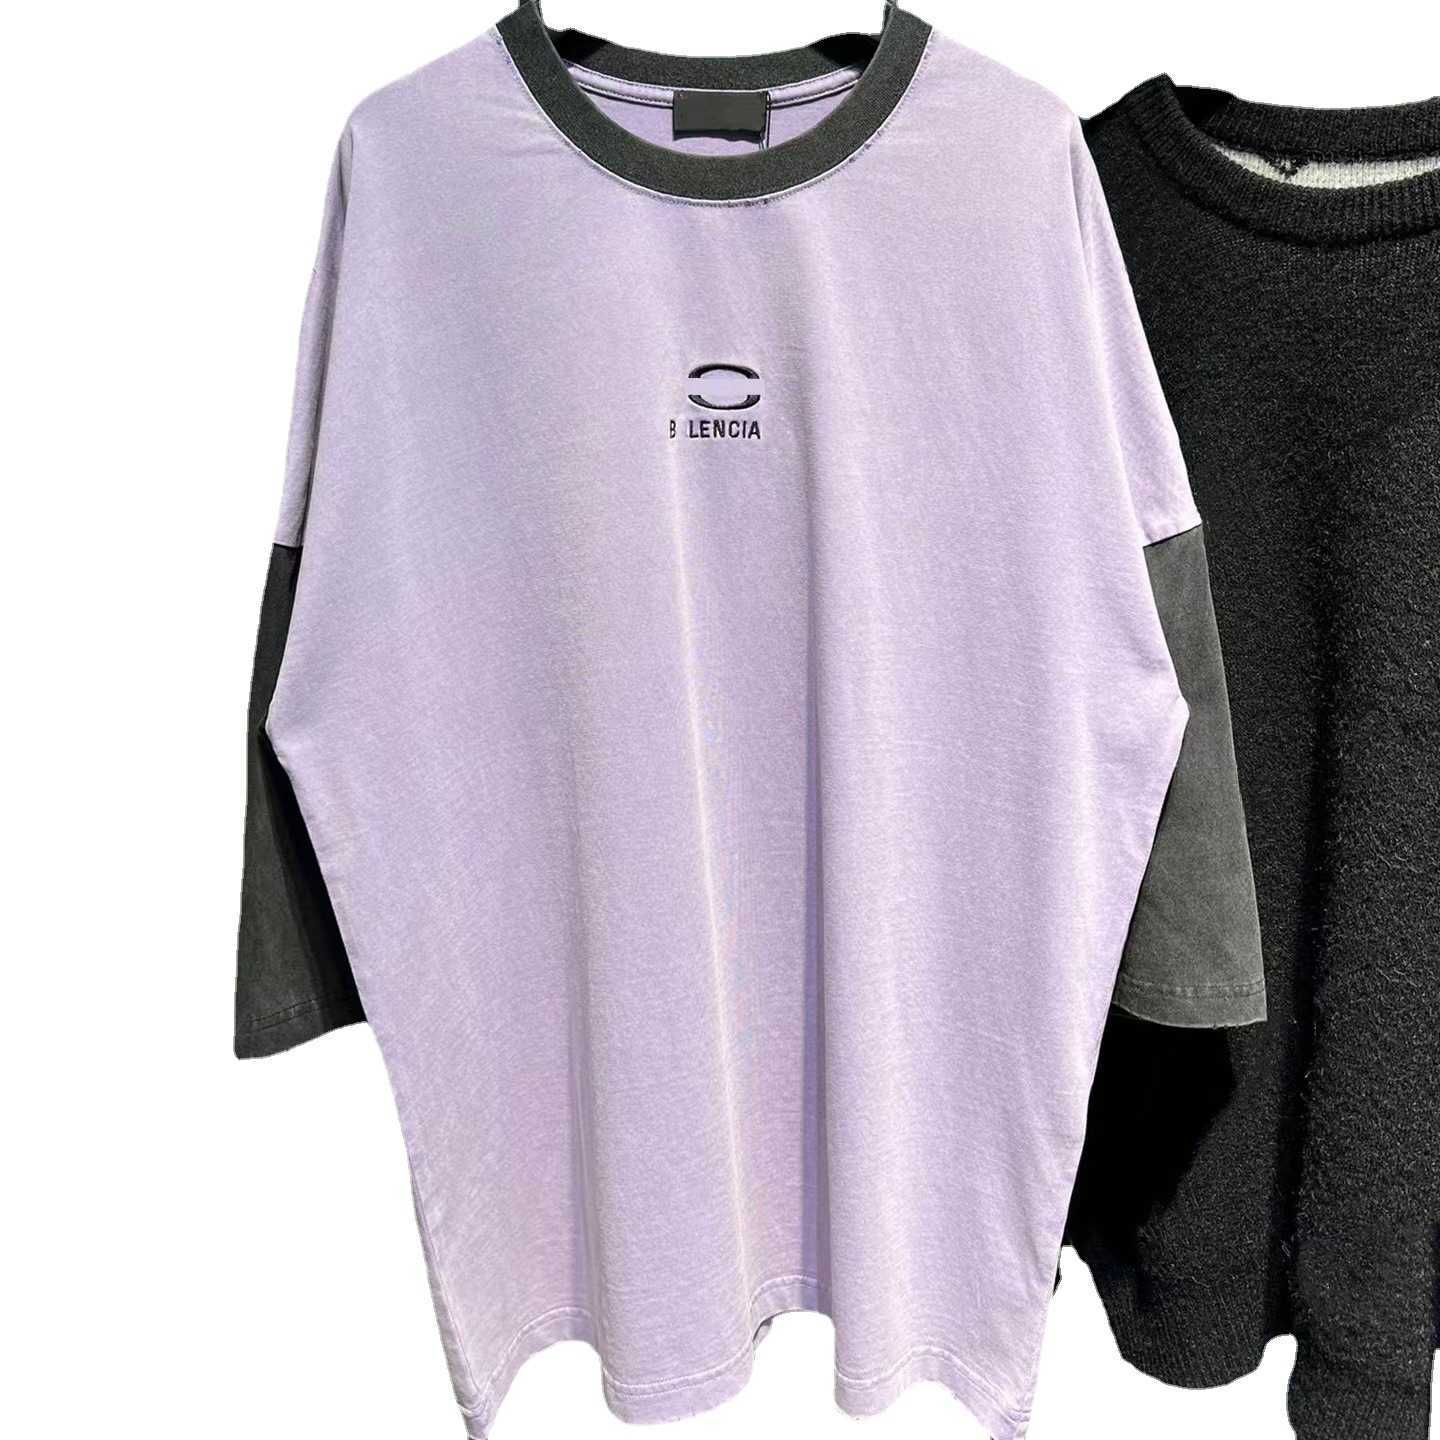 Abbigliamento femminile firmato 20% di sconto Differenziate Market High Edition Famiglia Girocollo ricamato Manica lunga T-shirt unisex semplice grande